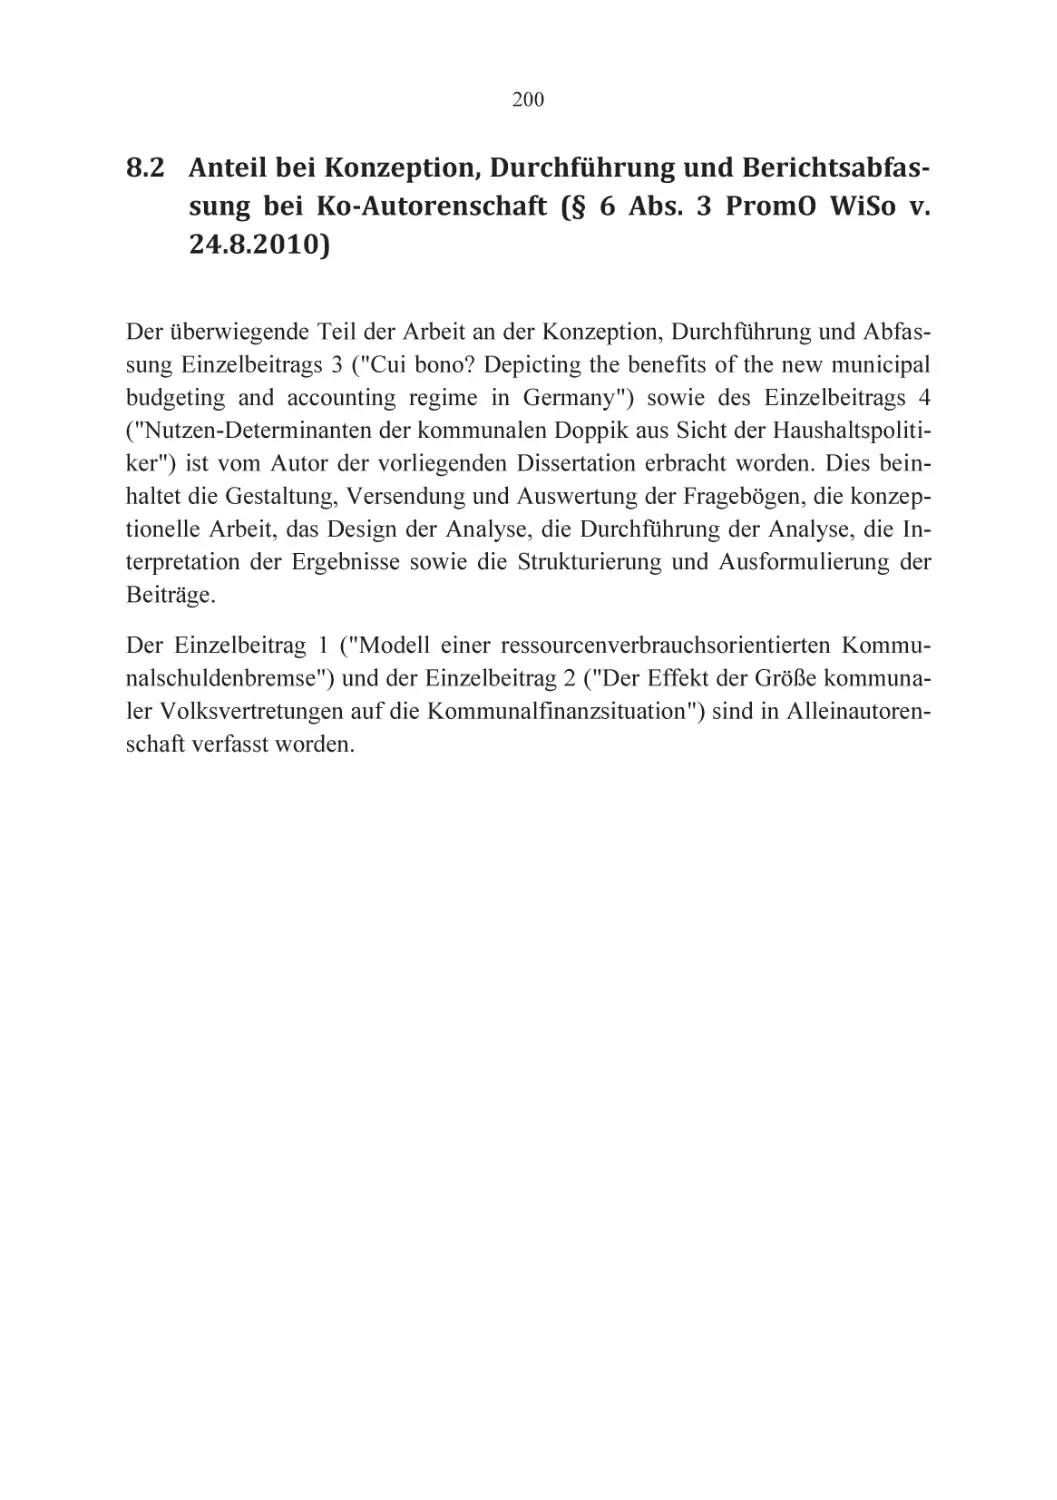 8.2 Anteil bei Konzeption, Durchführung und Berichtsabfassung bei Ko-Autorenschaft (§ 6 Abs. 3 PromO WiSo v. 24.8.2010)